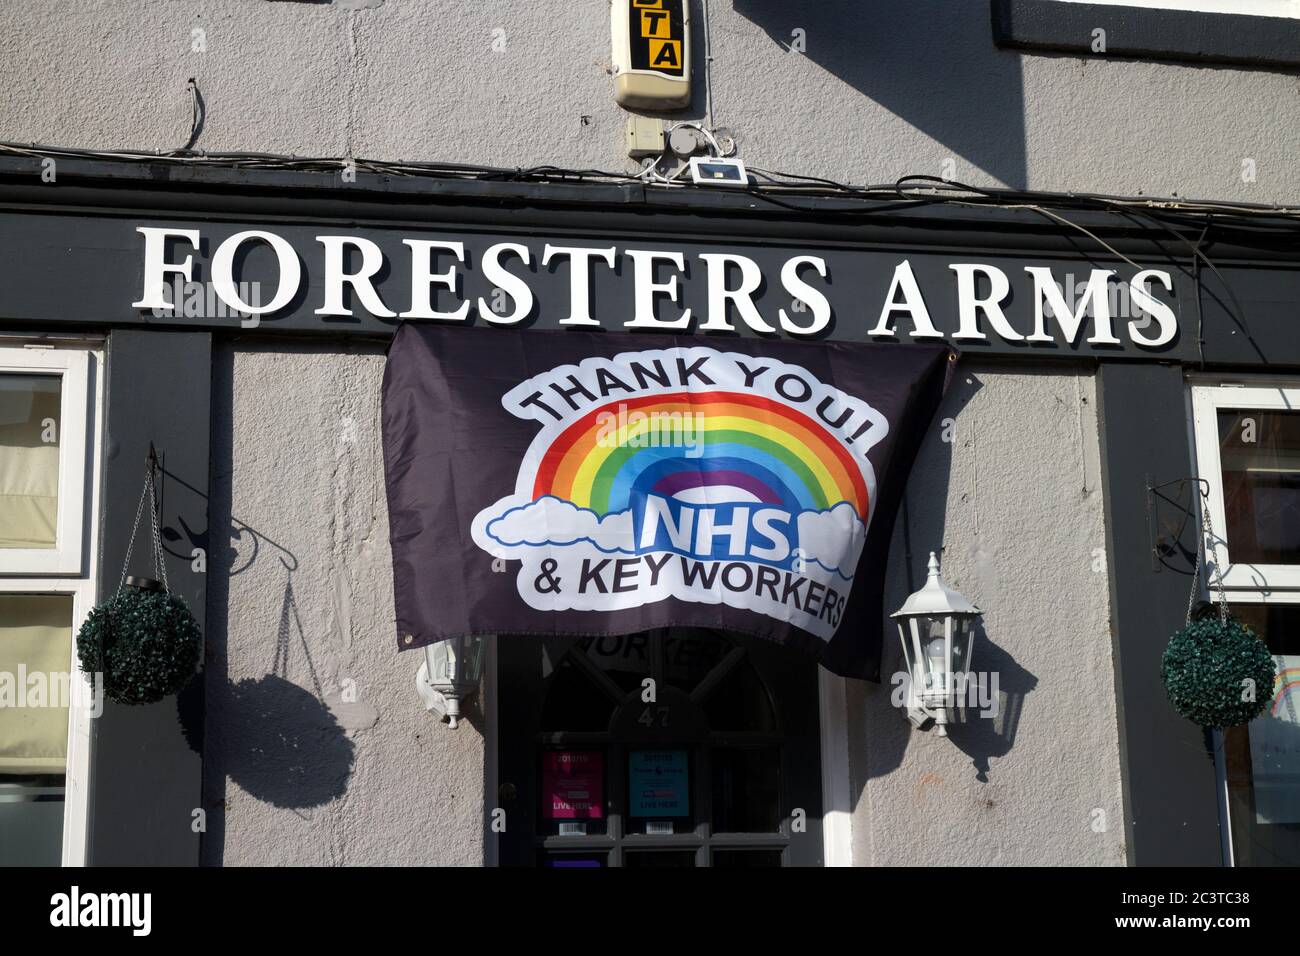 Il pub Foresters Arms con e lavoratori chiave NHS grazie banner durante Covid-19 pandemic, Warwick, Warwickshire, Inghilterra, Regno Unito Foto Stock